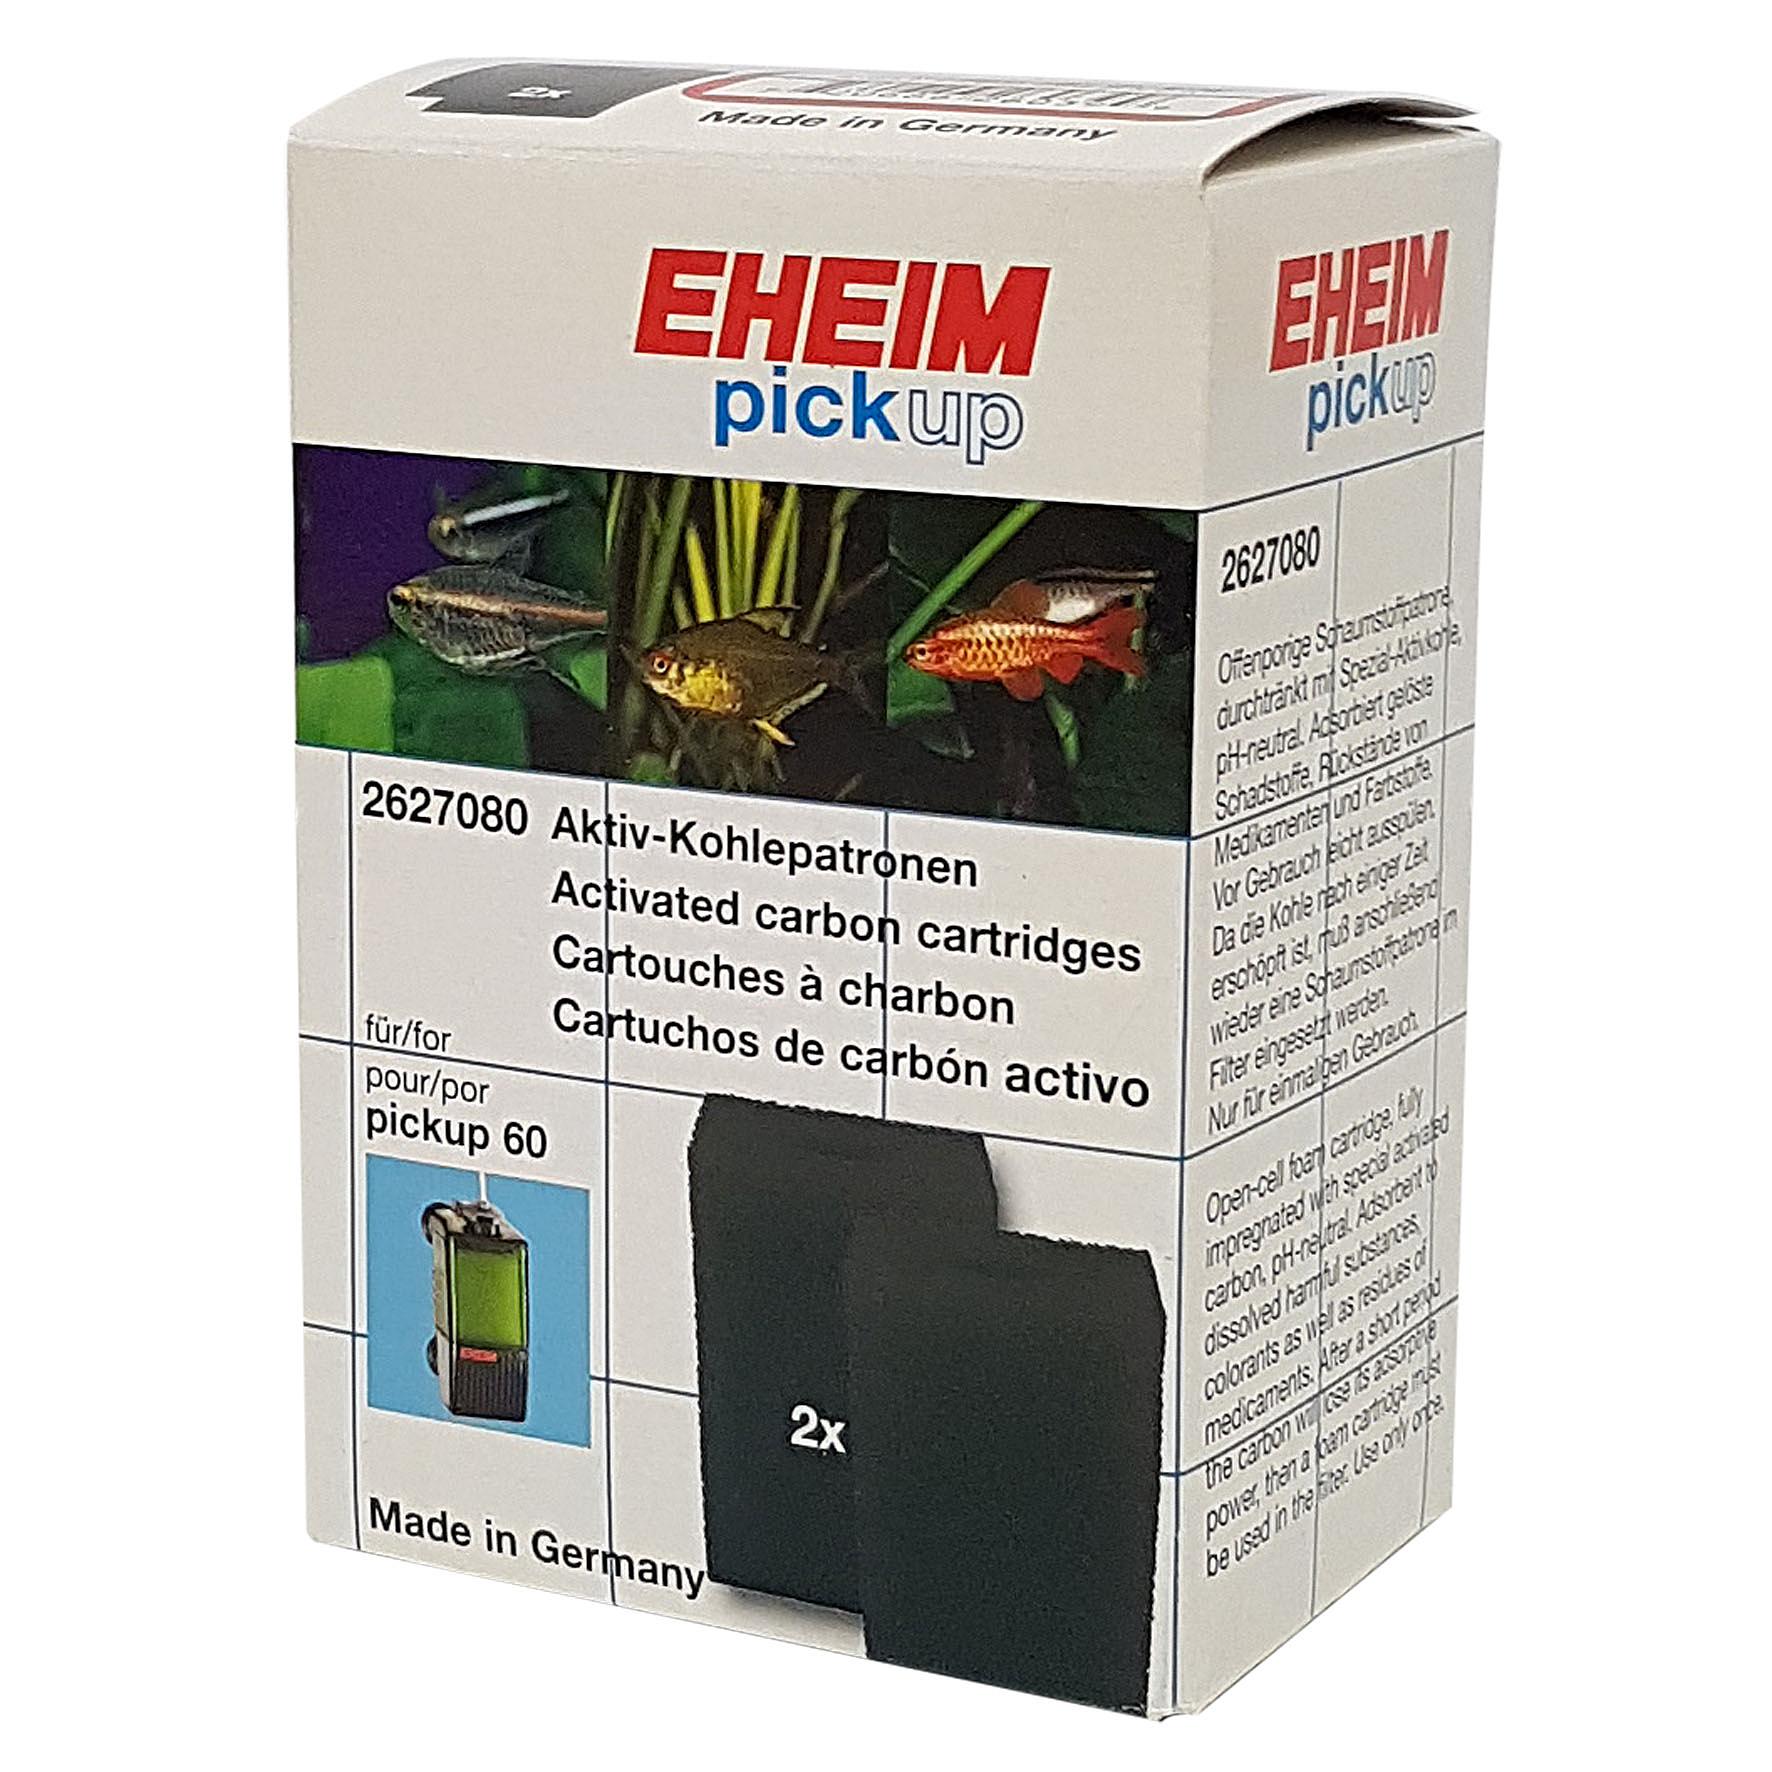 EHEIM Aktiv-Kohlepatrone, Filtermaterial zu Pickup 60 bestellen